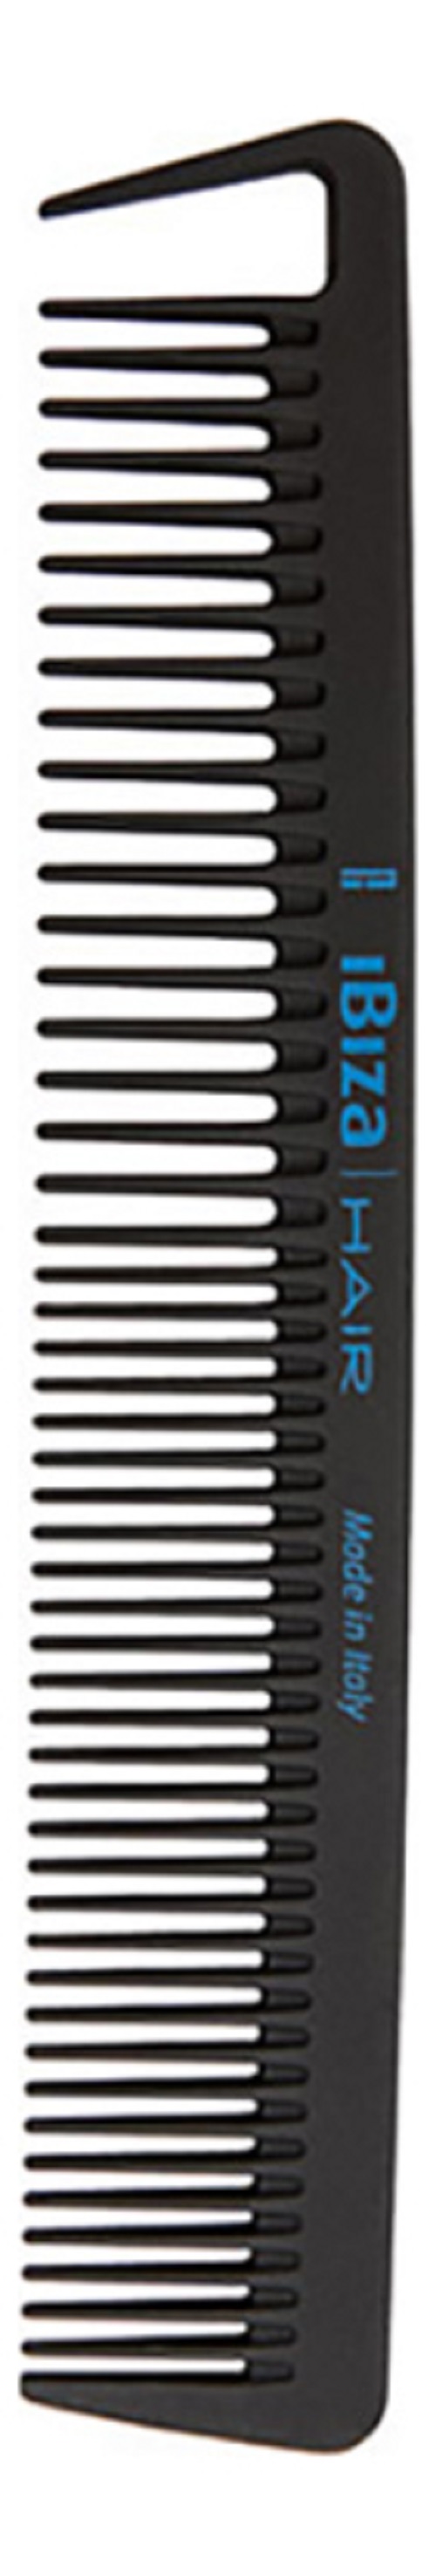 Расческа для волос Ibiza Hair Carbon Comb Section Карбоновая с широкими секциями расческа для кошек и собак yento comb пластик металл в ассортименте 28 см